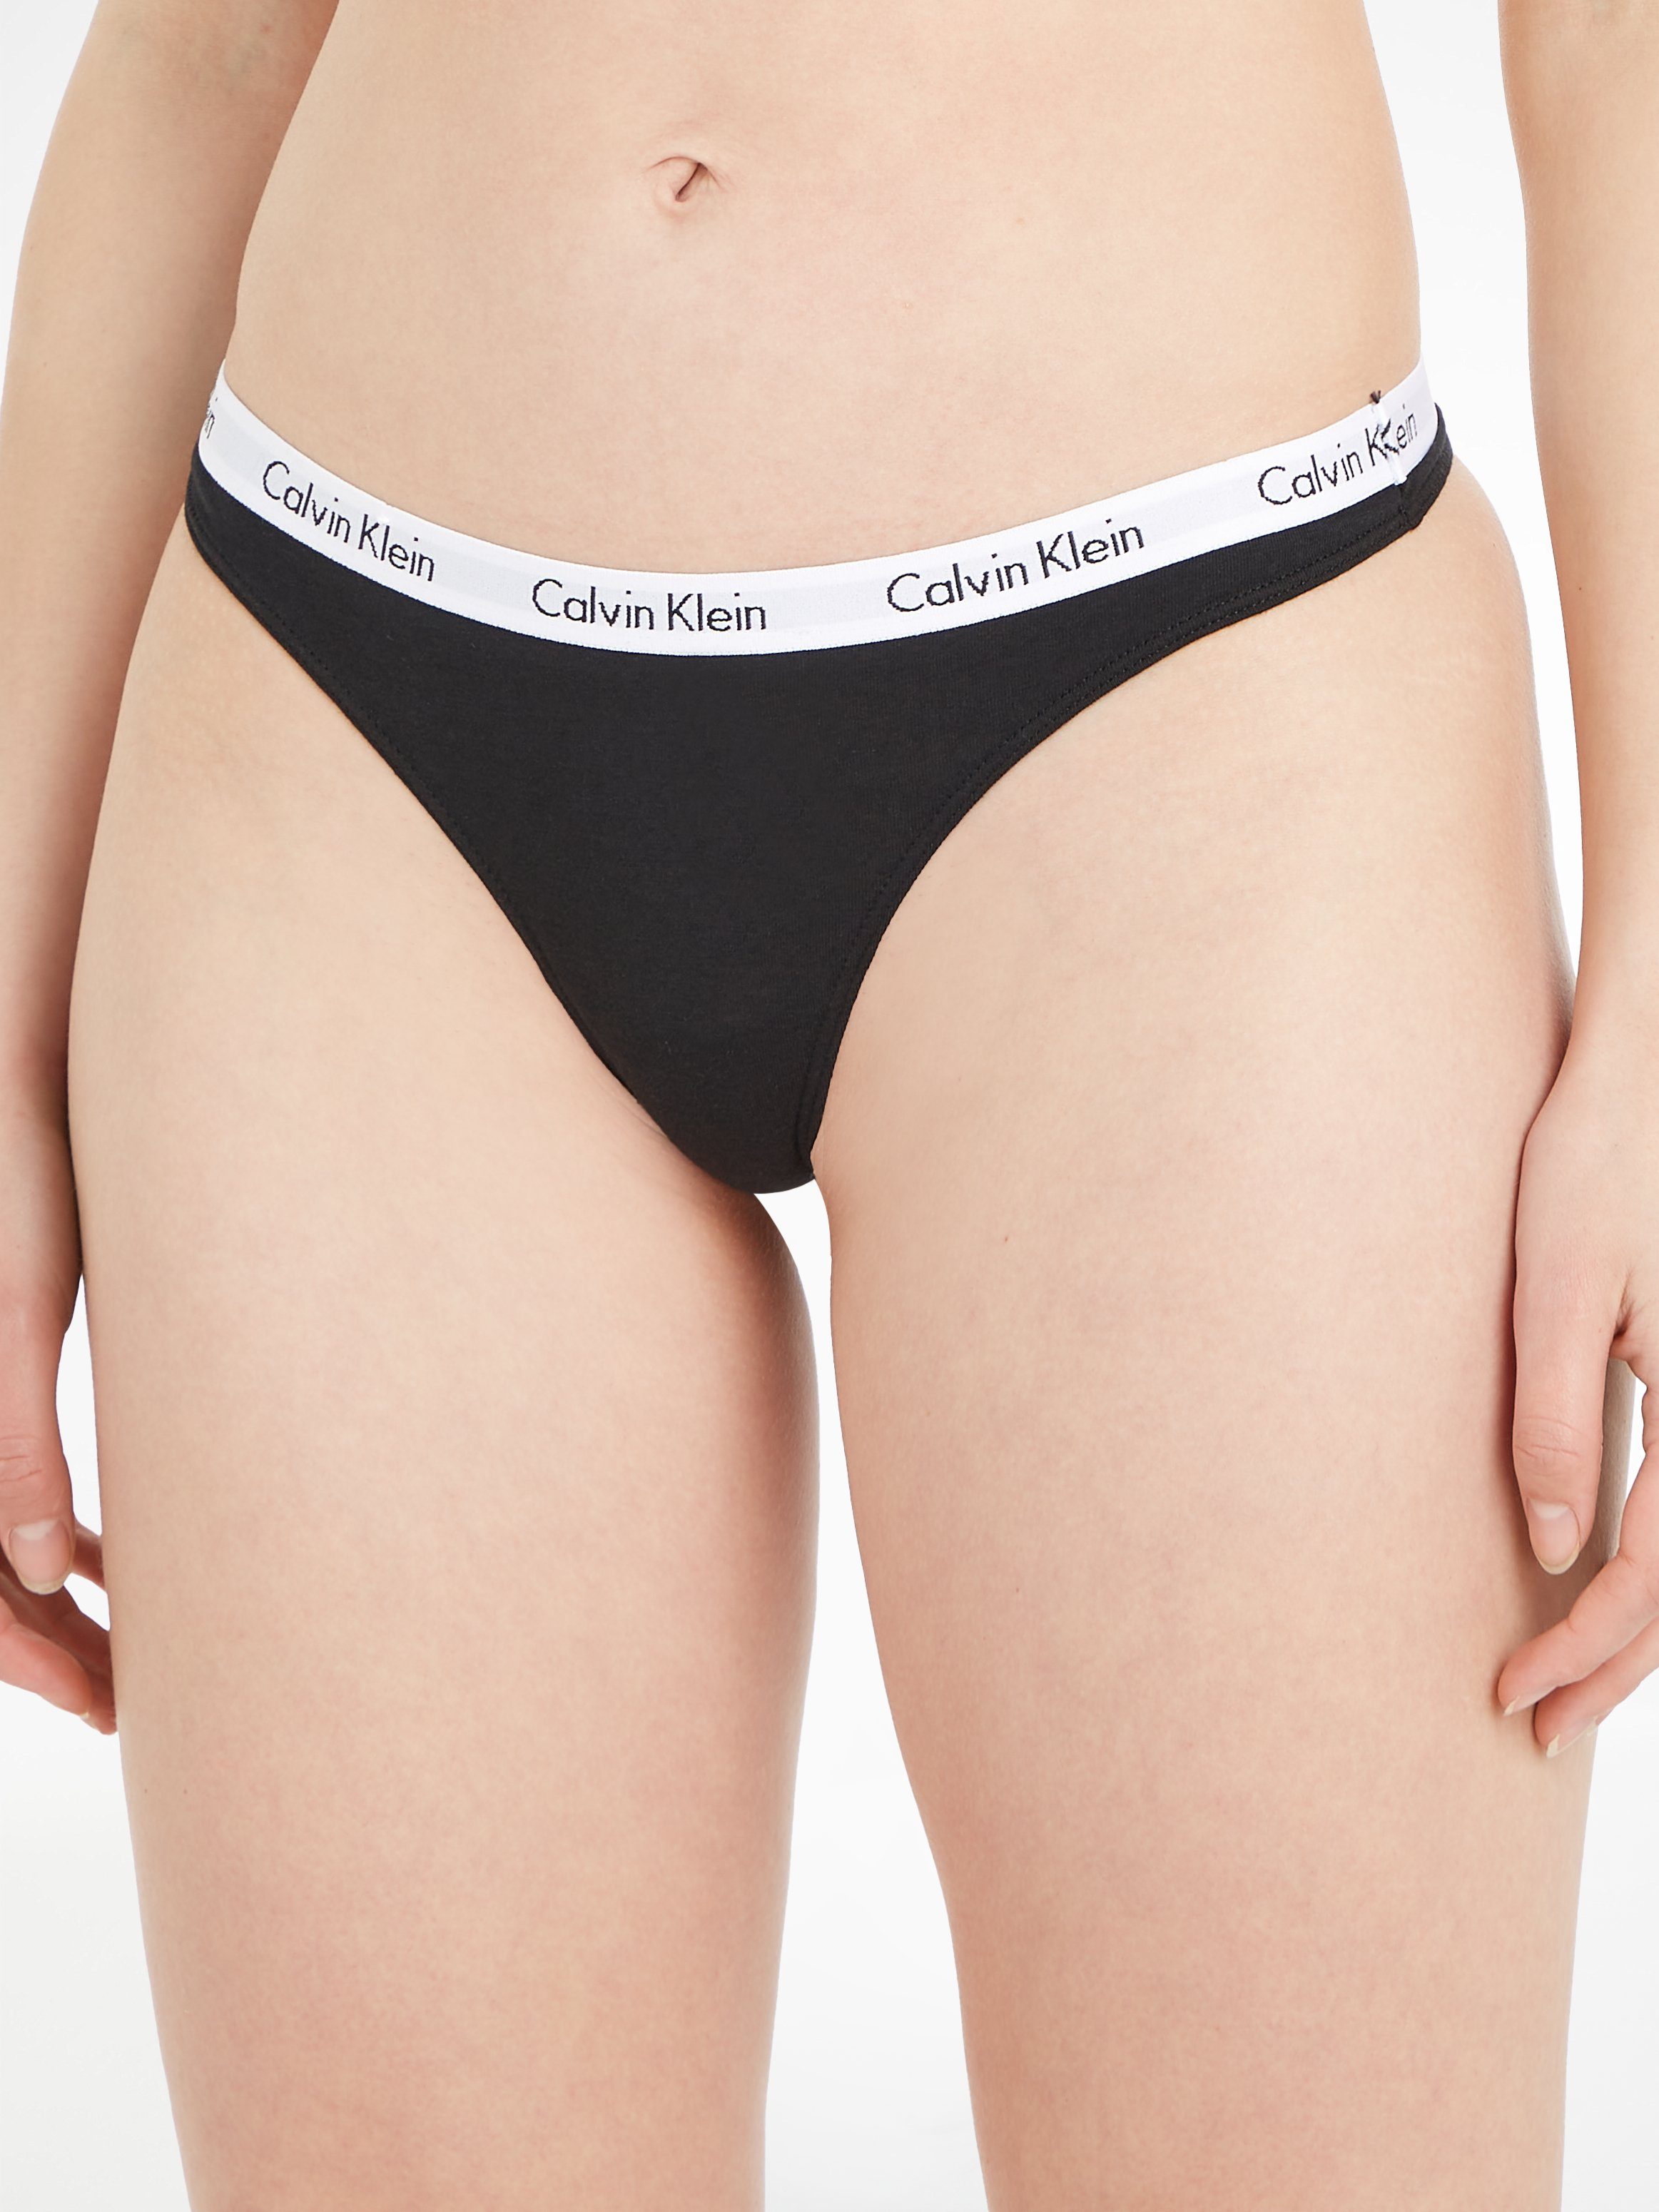 Klein Logobund, T-String mit Underwear T-String Calvin Klein Underwear Calvin von klassischem